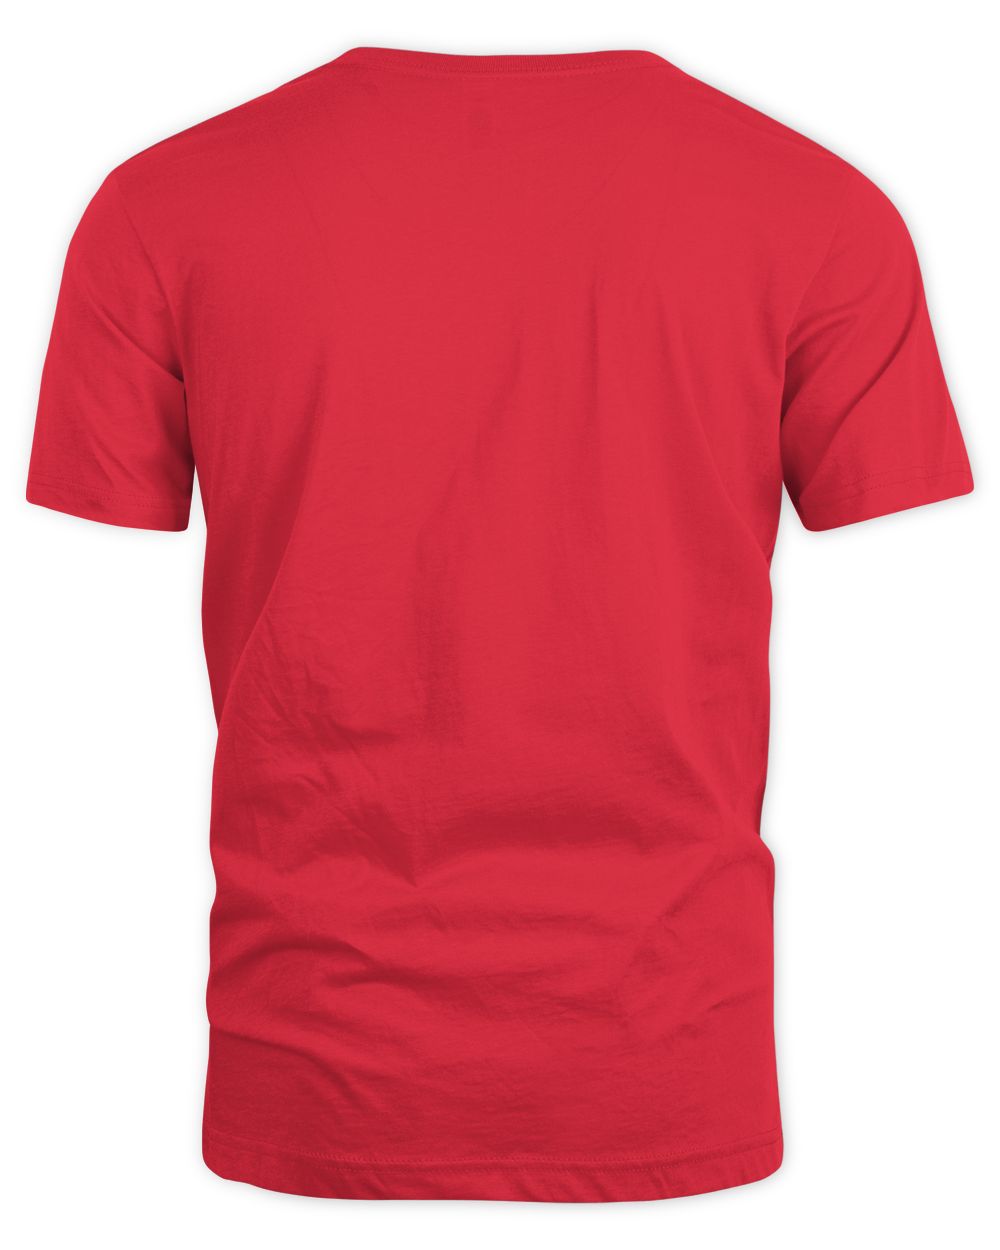 Birdsarentreal Merch Drone Field Guide Shirt Unisex Standard T-Shirt red 